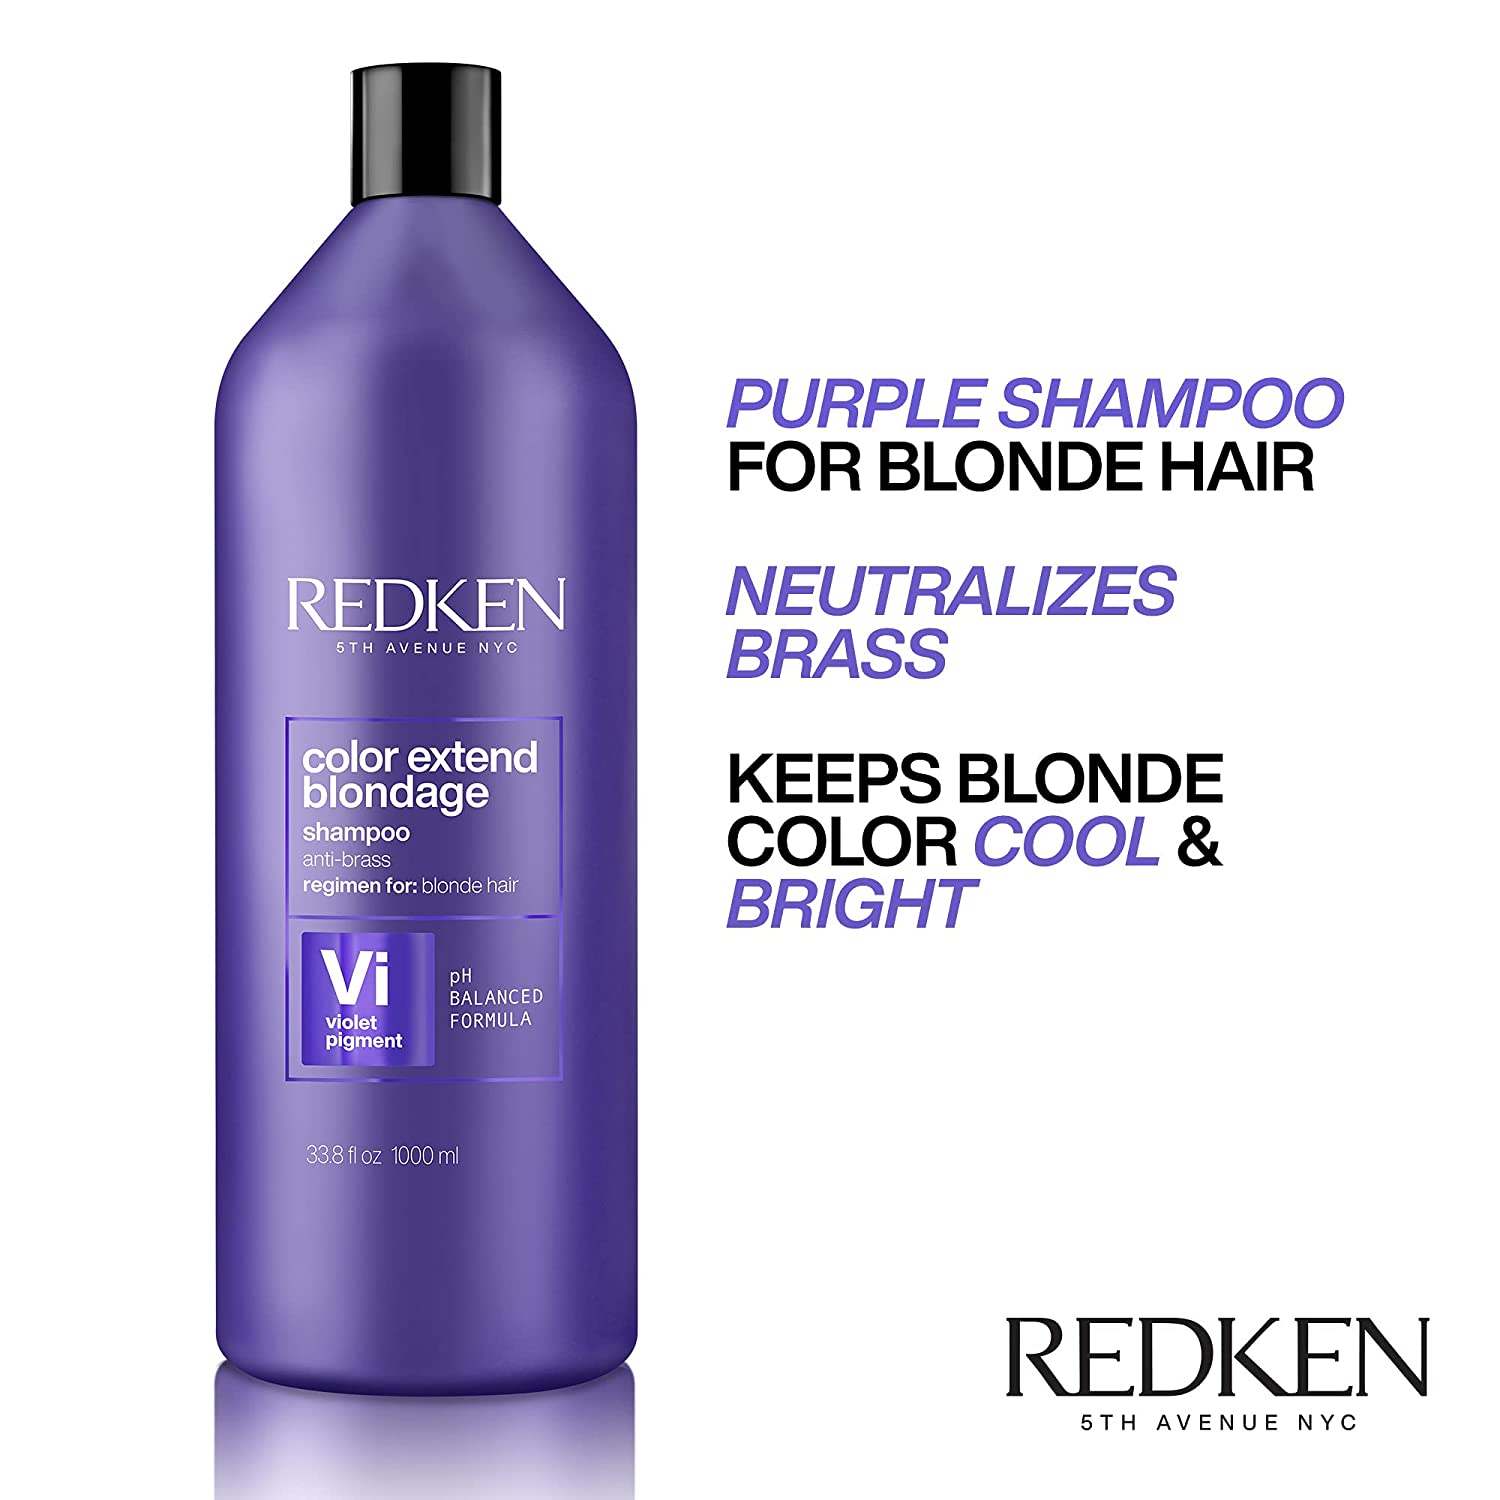 Redken Purple shampoo liter 